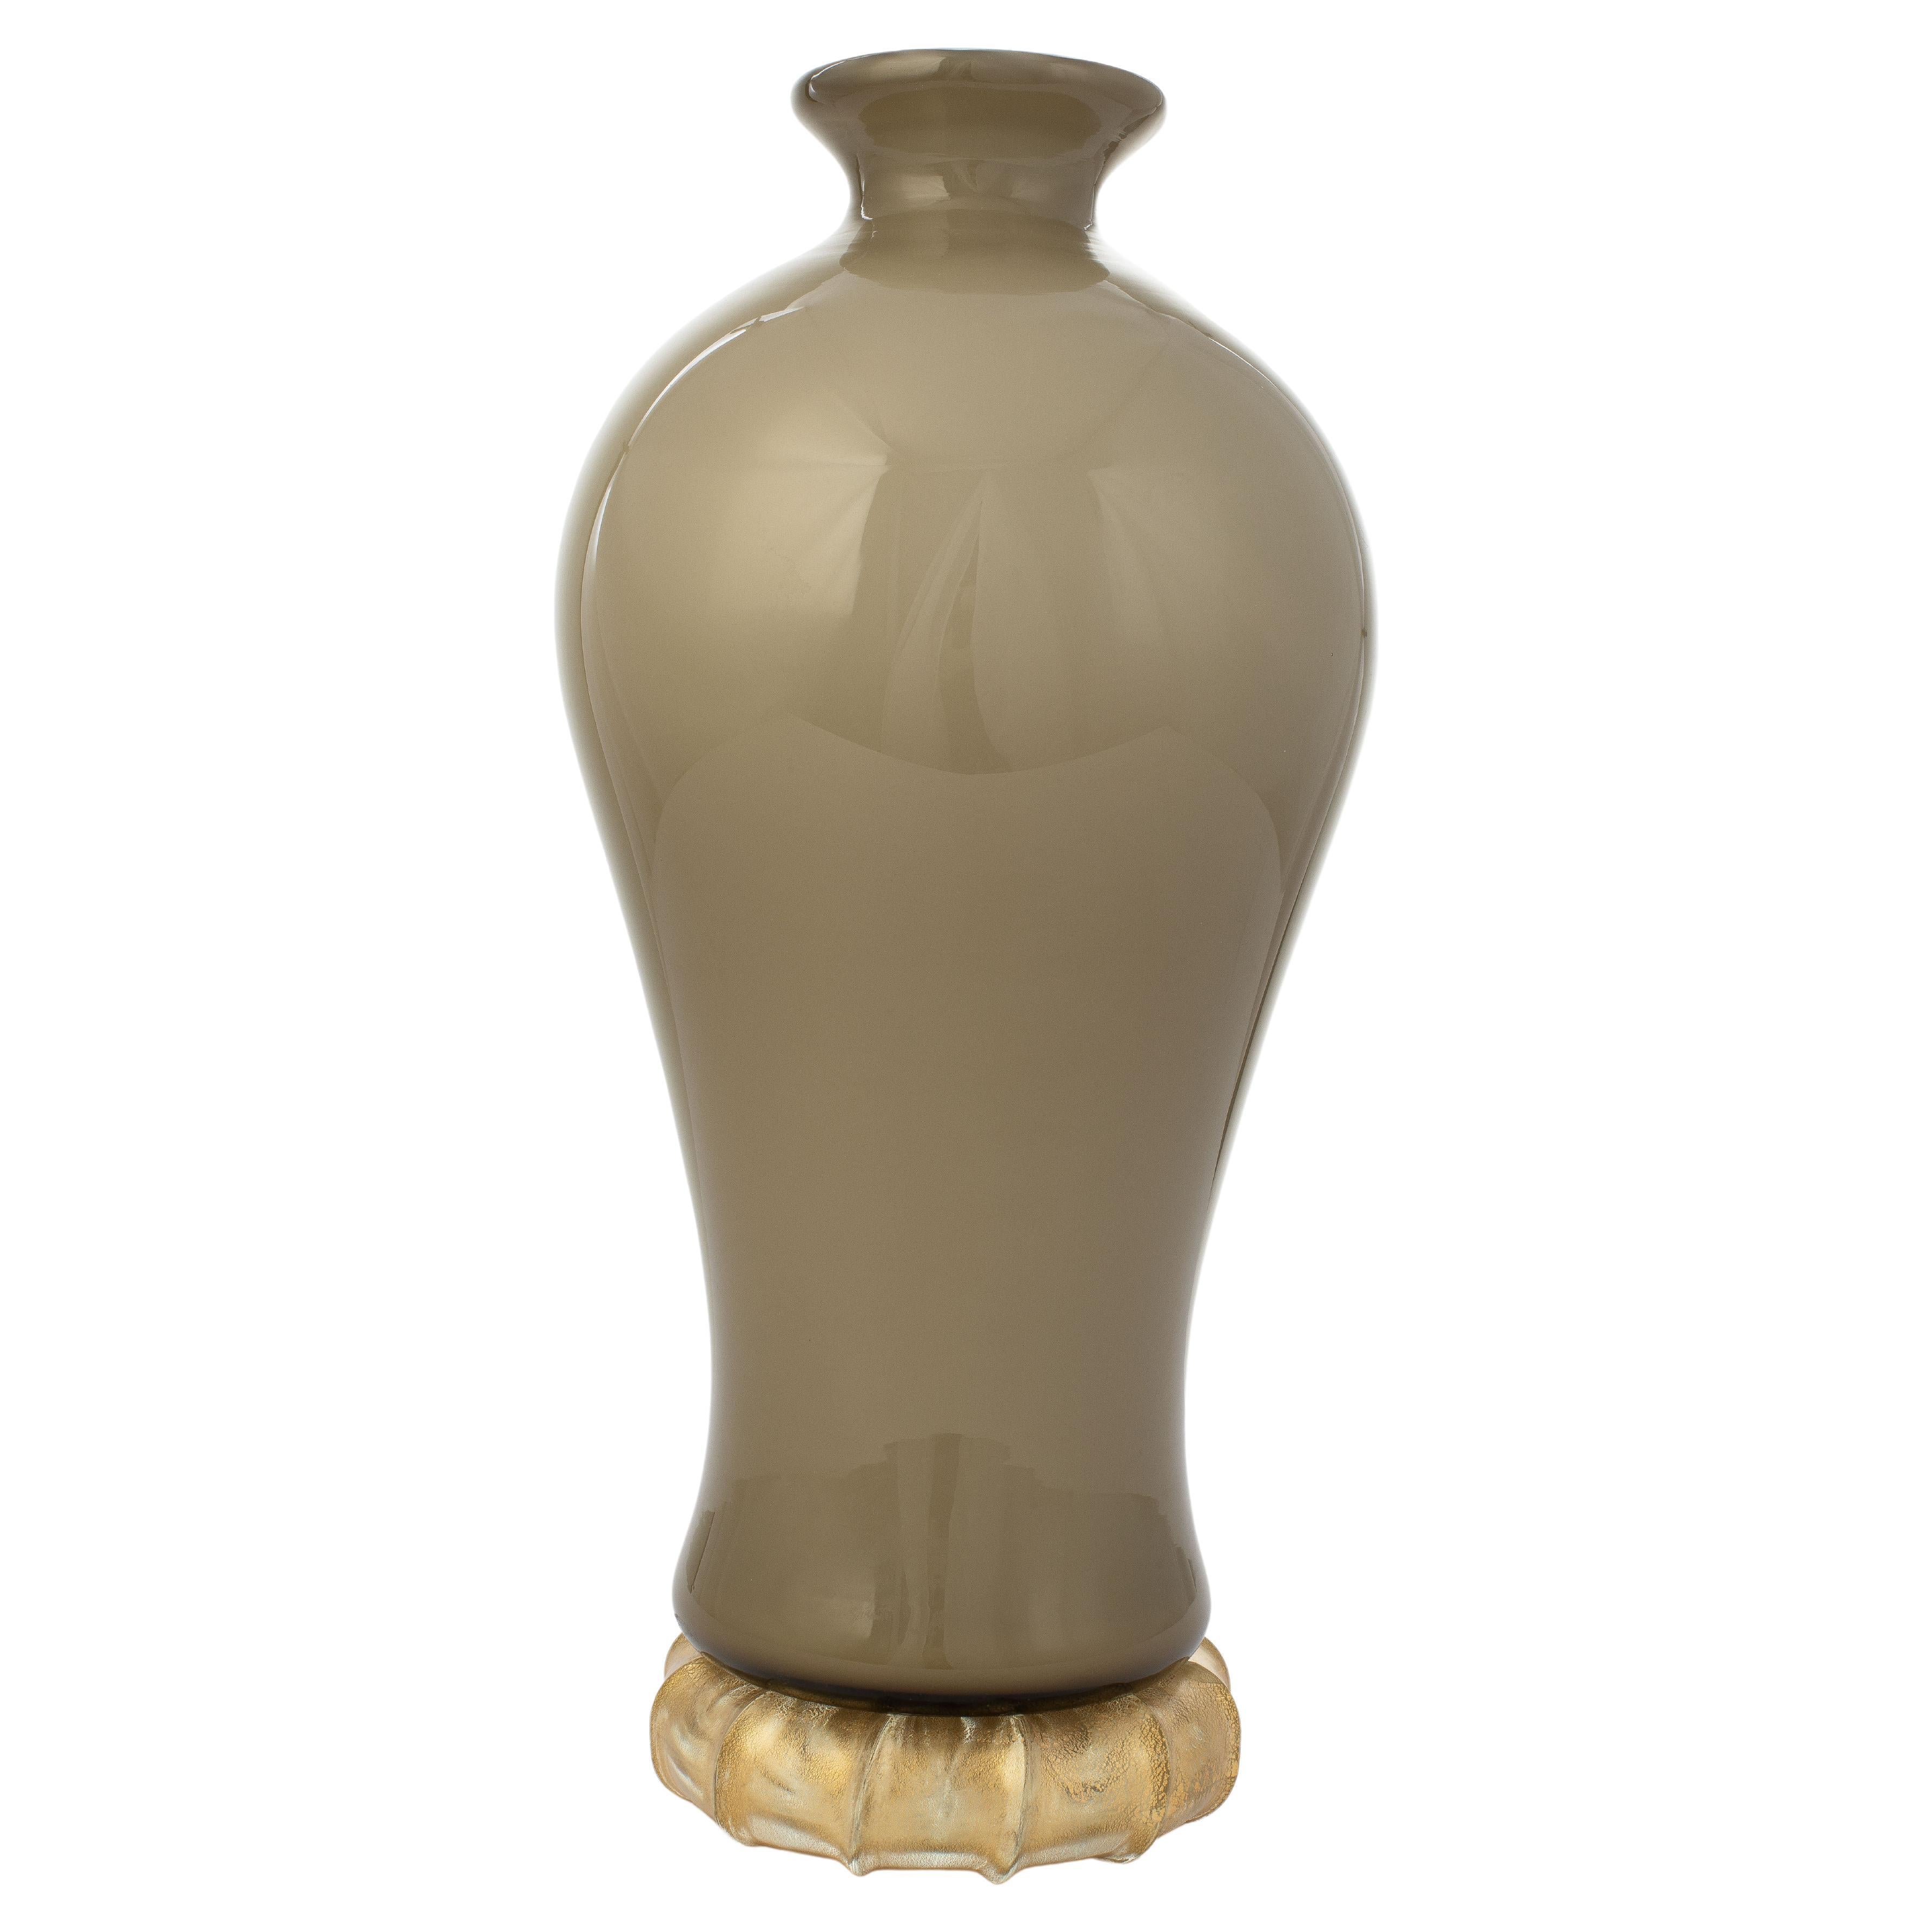 1295 Murano Hand Made Art Glass Venezia Doge Vase Bottle For Sale